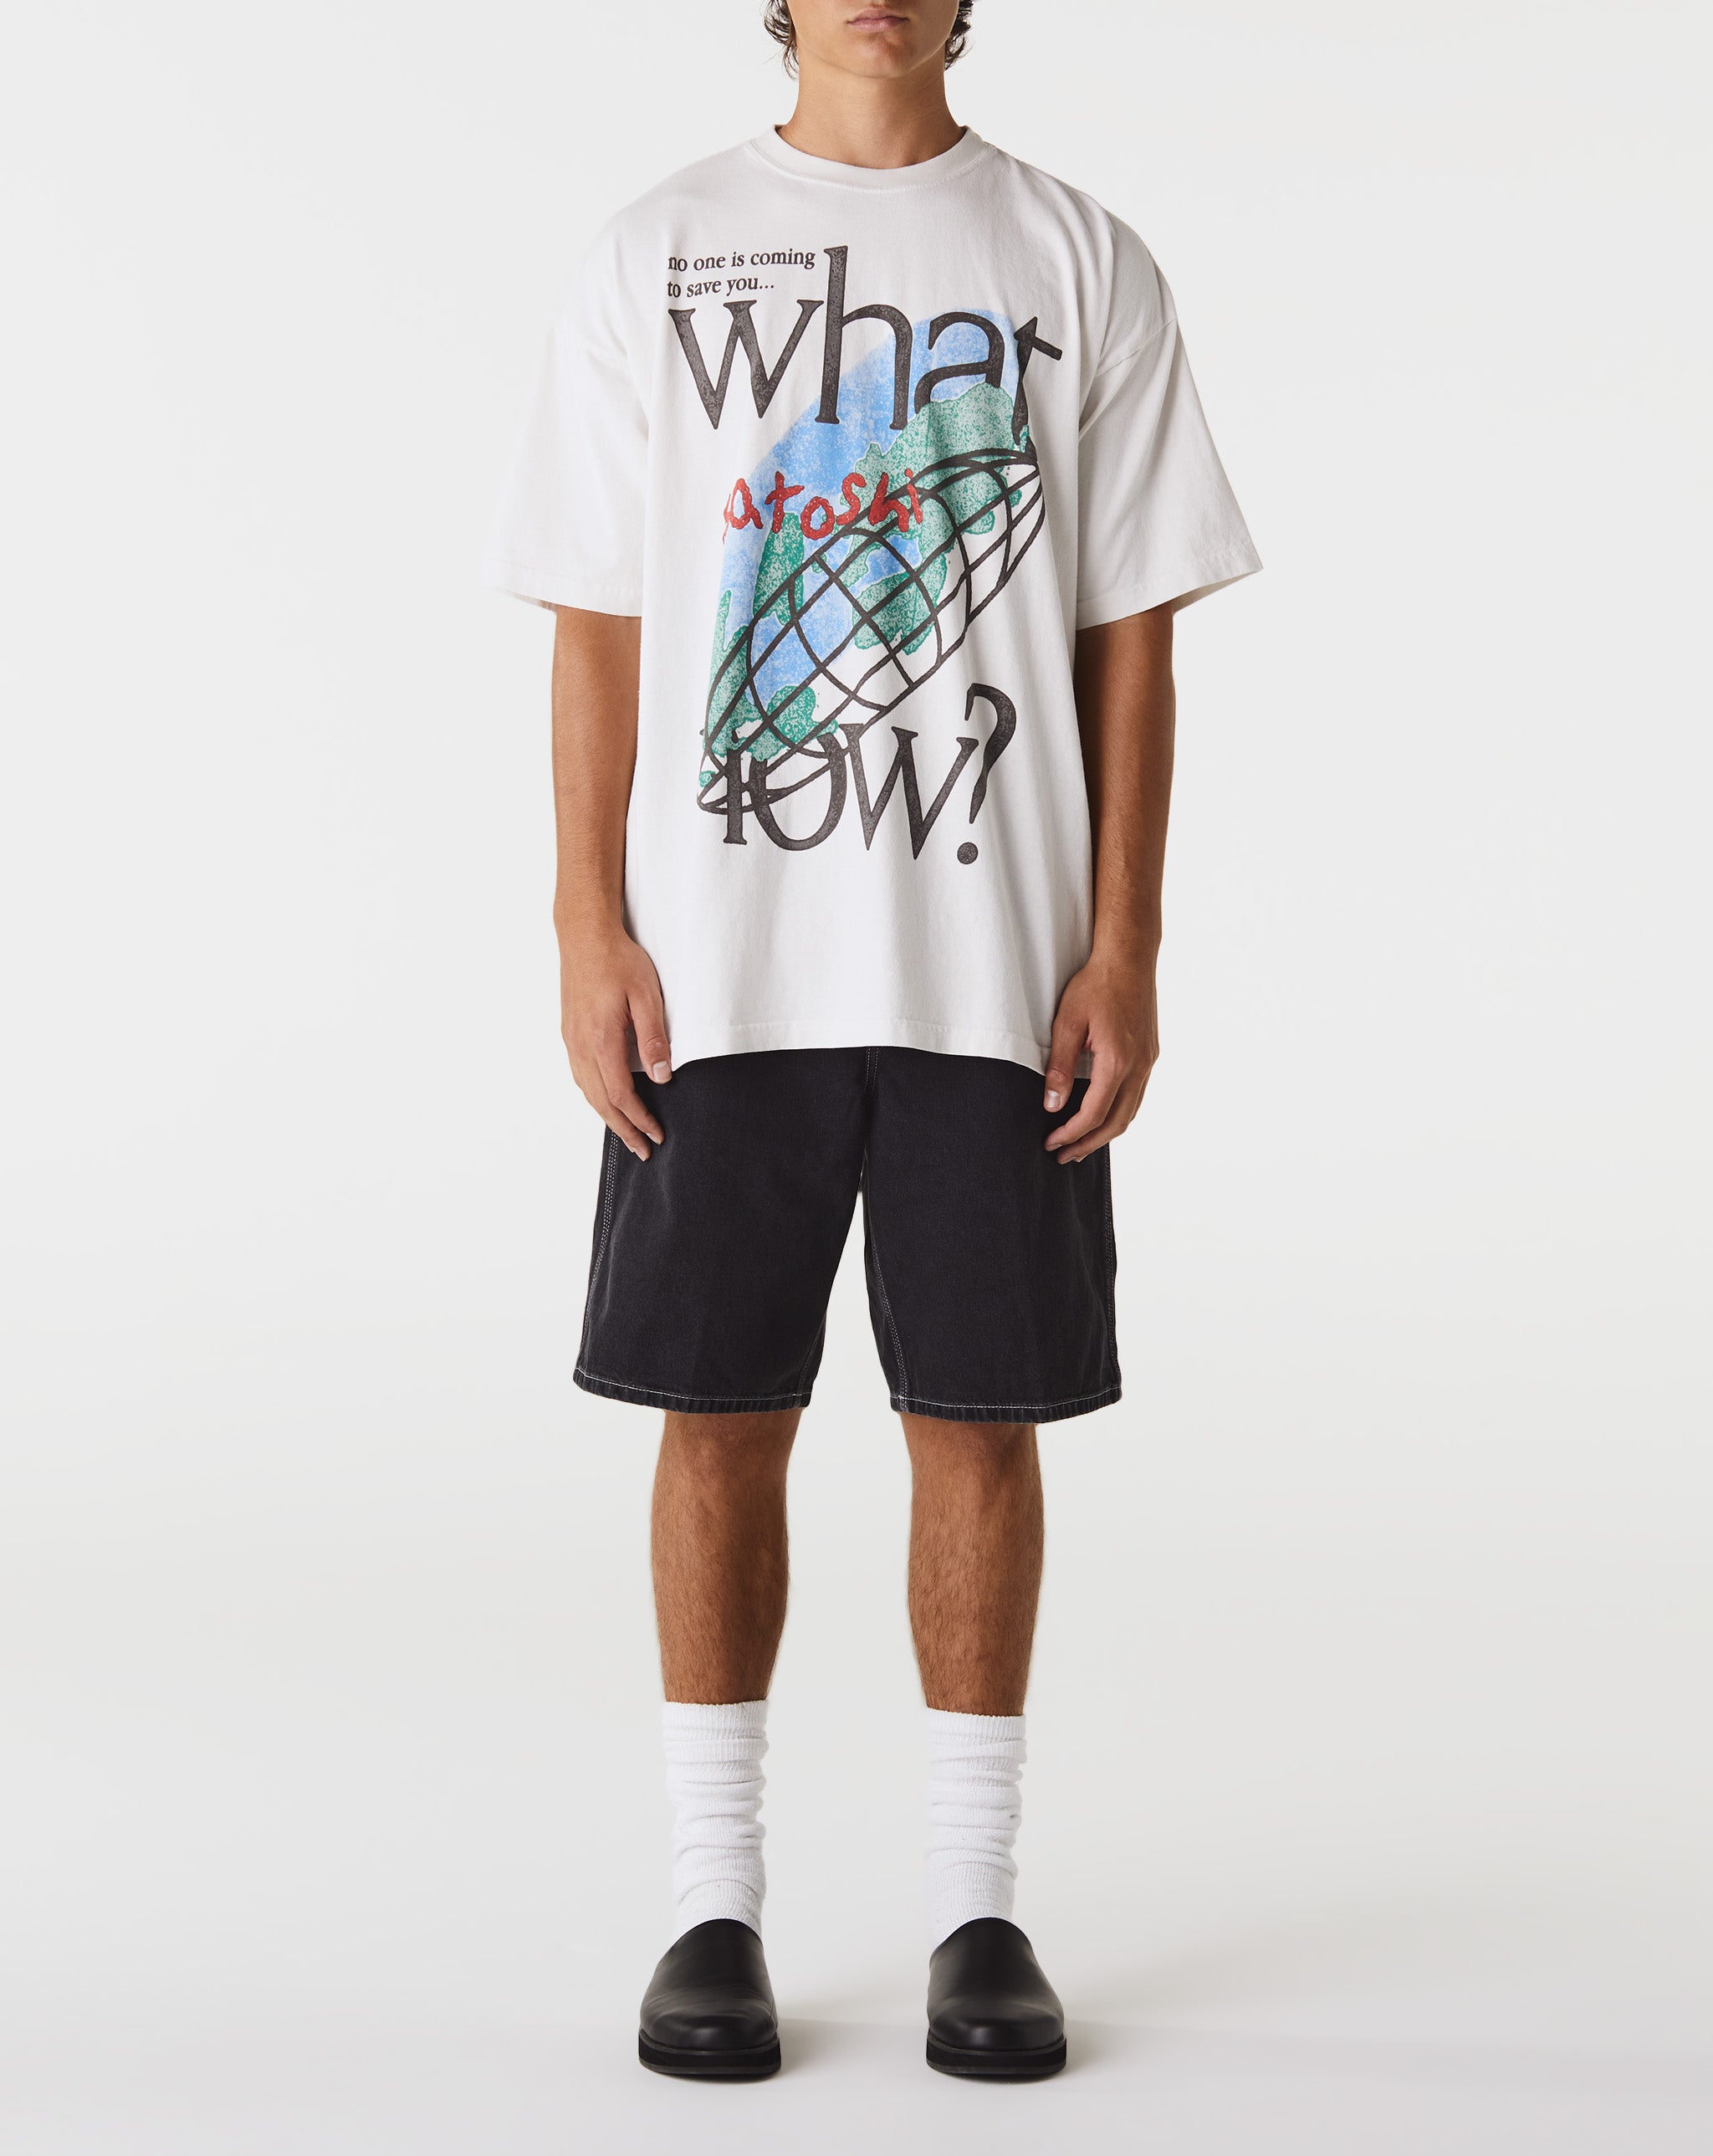 Satoshi Nakamoto Herd Mentaltity T-Shirt  - Cheap Urlfreeze Jordan outlet